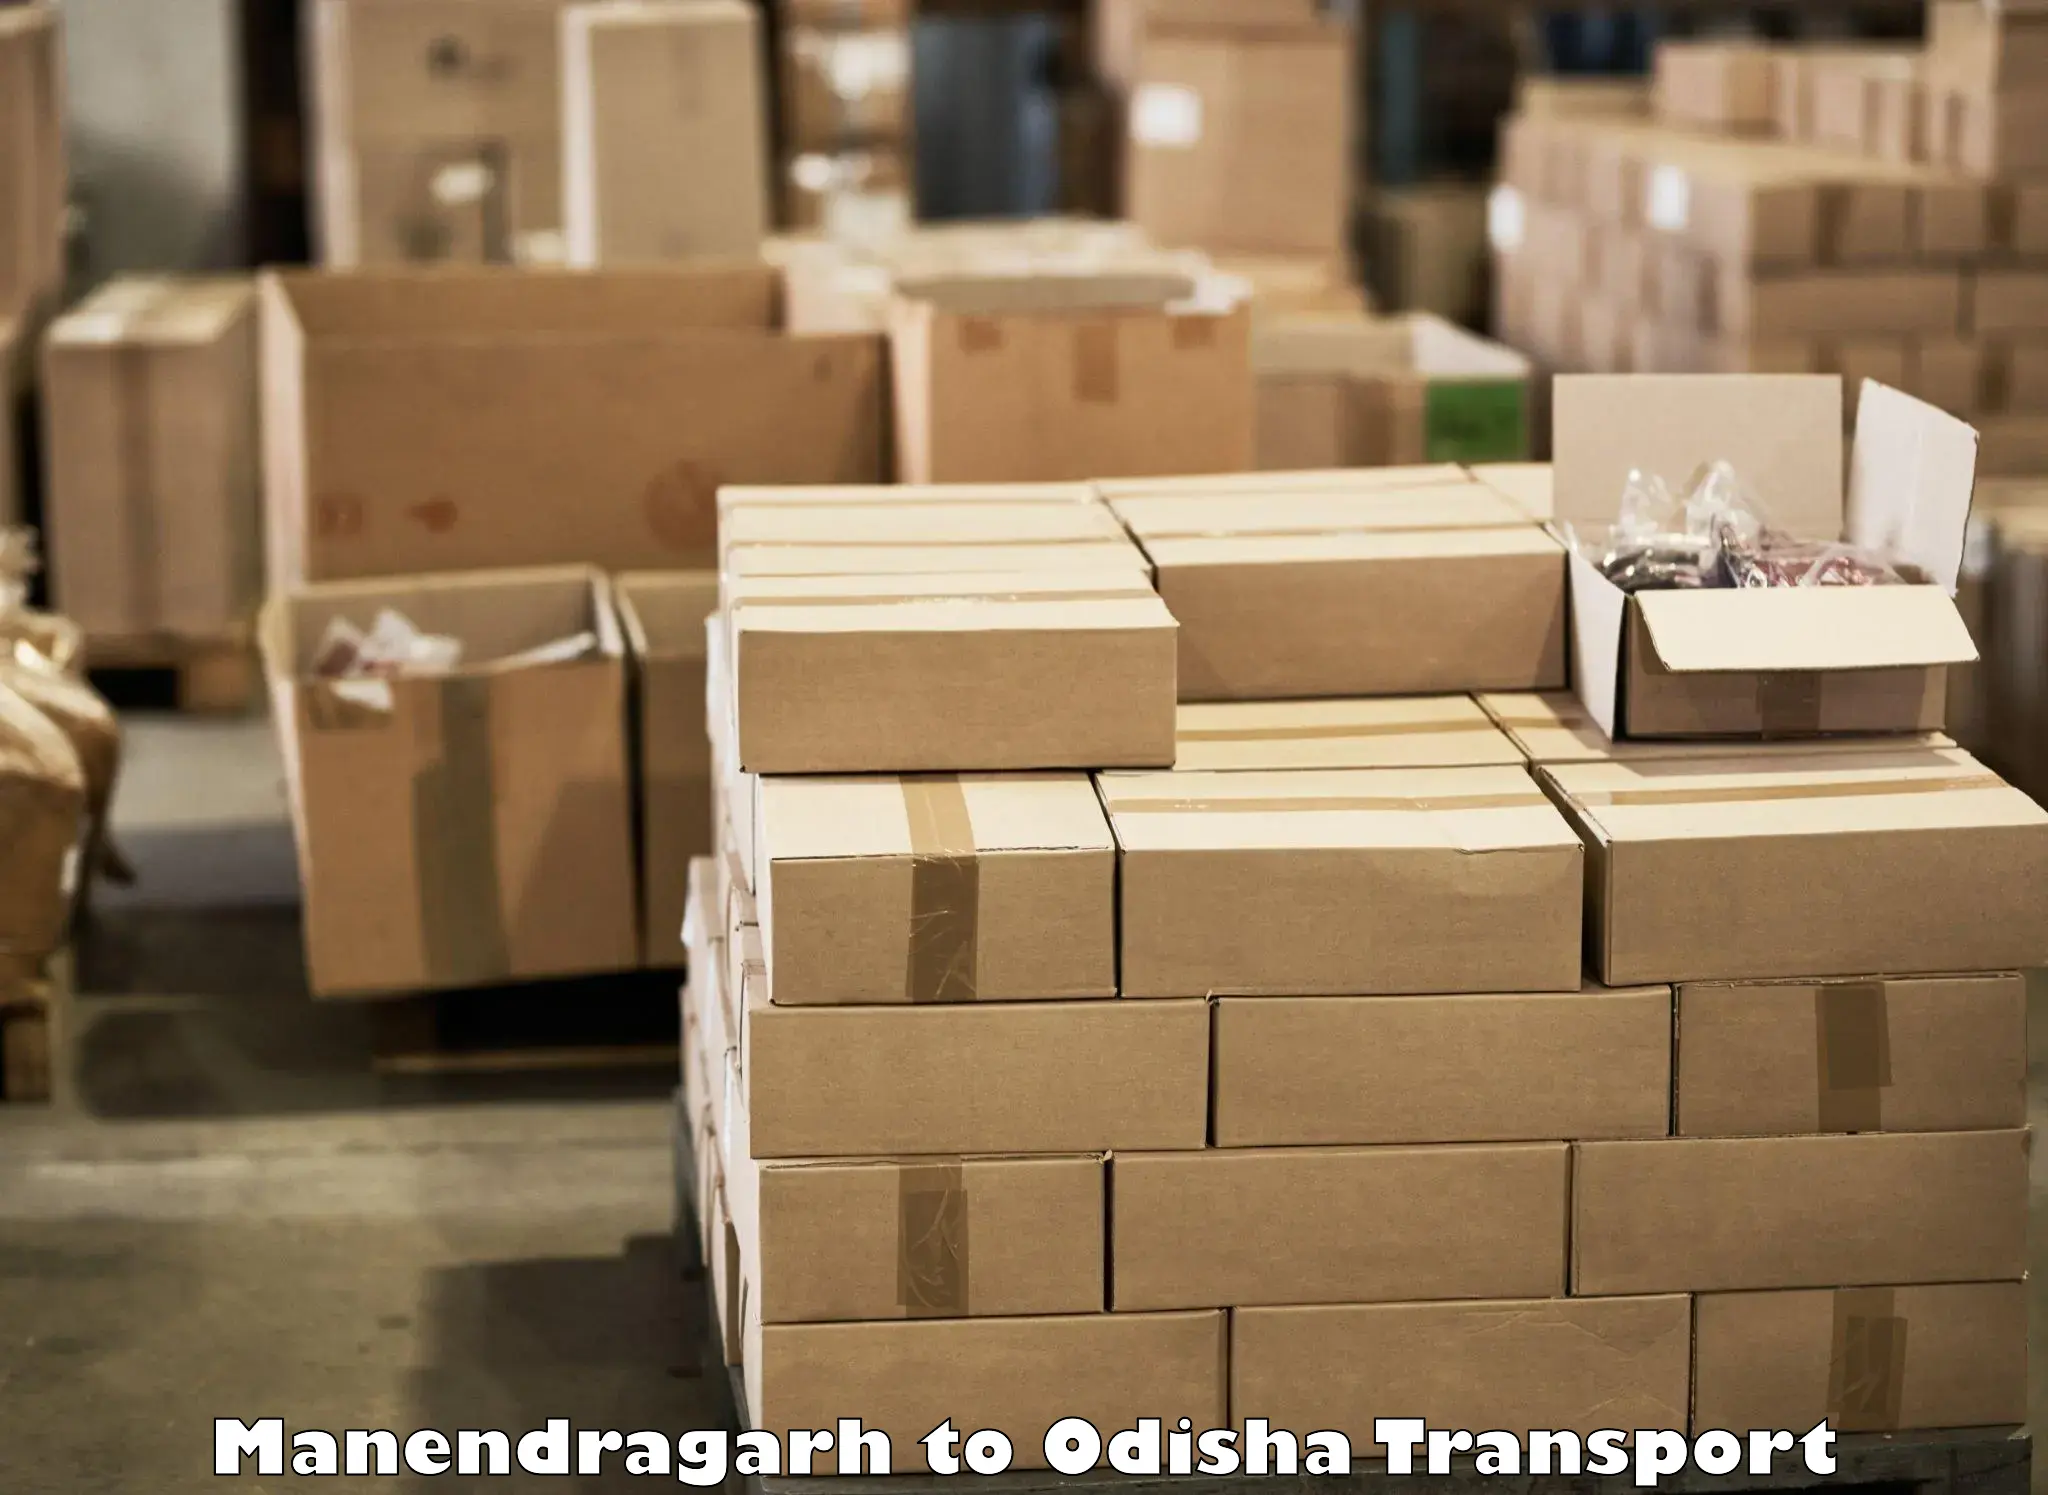 International cargo transportation services Manendragarh to Jajpur